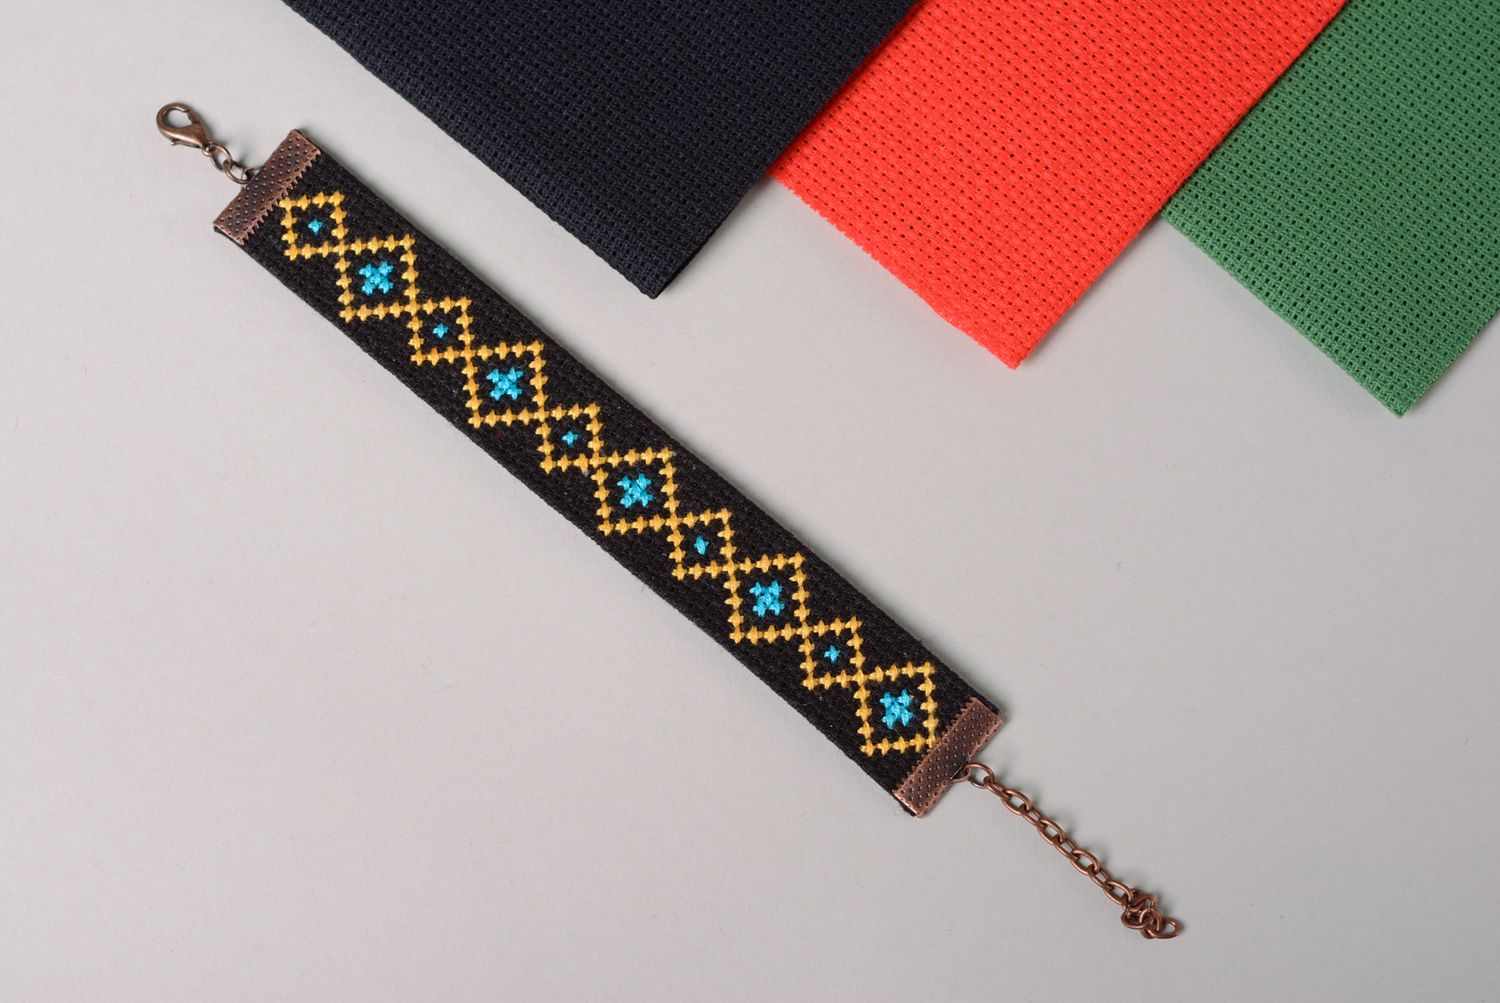 Textil Armband mit Kreuzstichstickerei foto 1